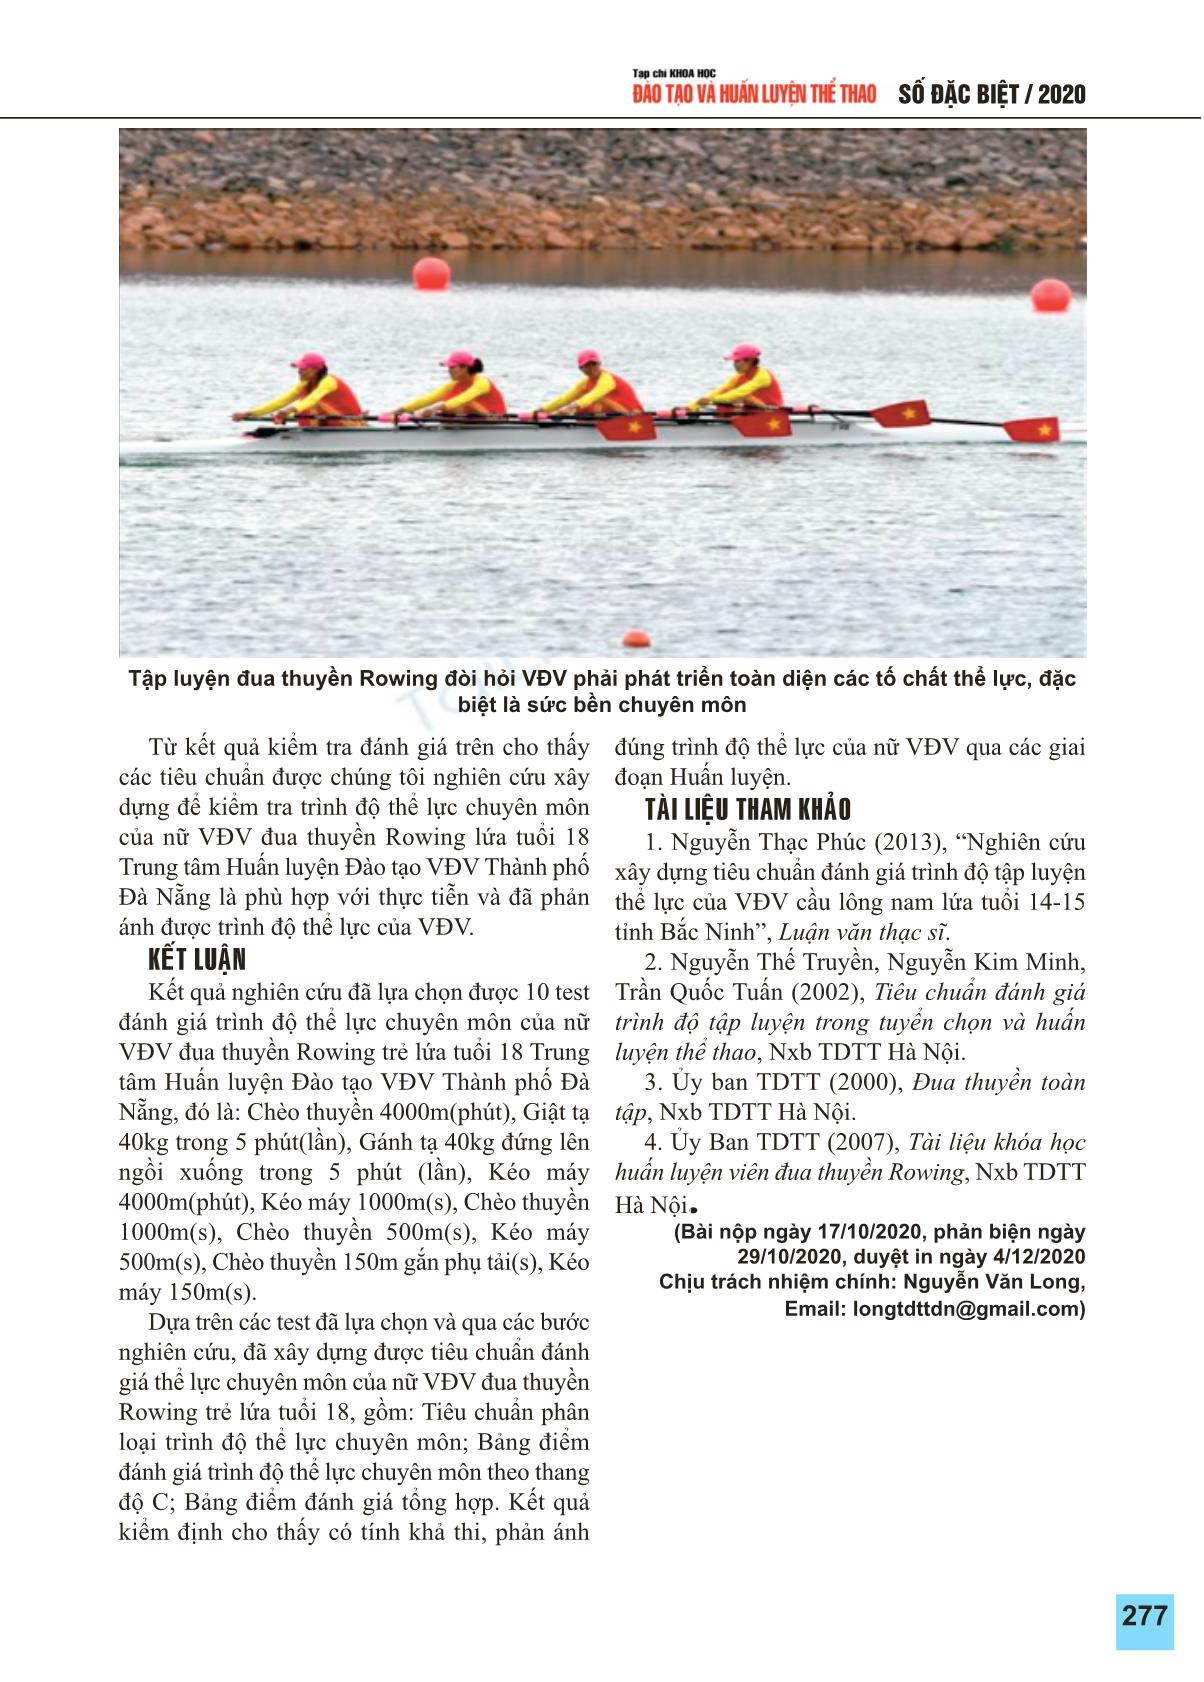 Xây dựng tiêu chuẩn đánh giá trình độ thể lực chuyên môn của nữ vận động viên đua thuyền Rowing trẻ lứa tuổi 18 trung tâm huấn luyện và đào tạo vận động viên thể dục thể thao thành phố Đà Nẵng trang 7